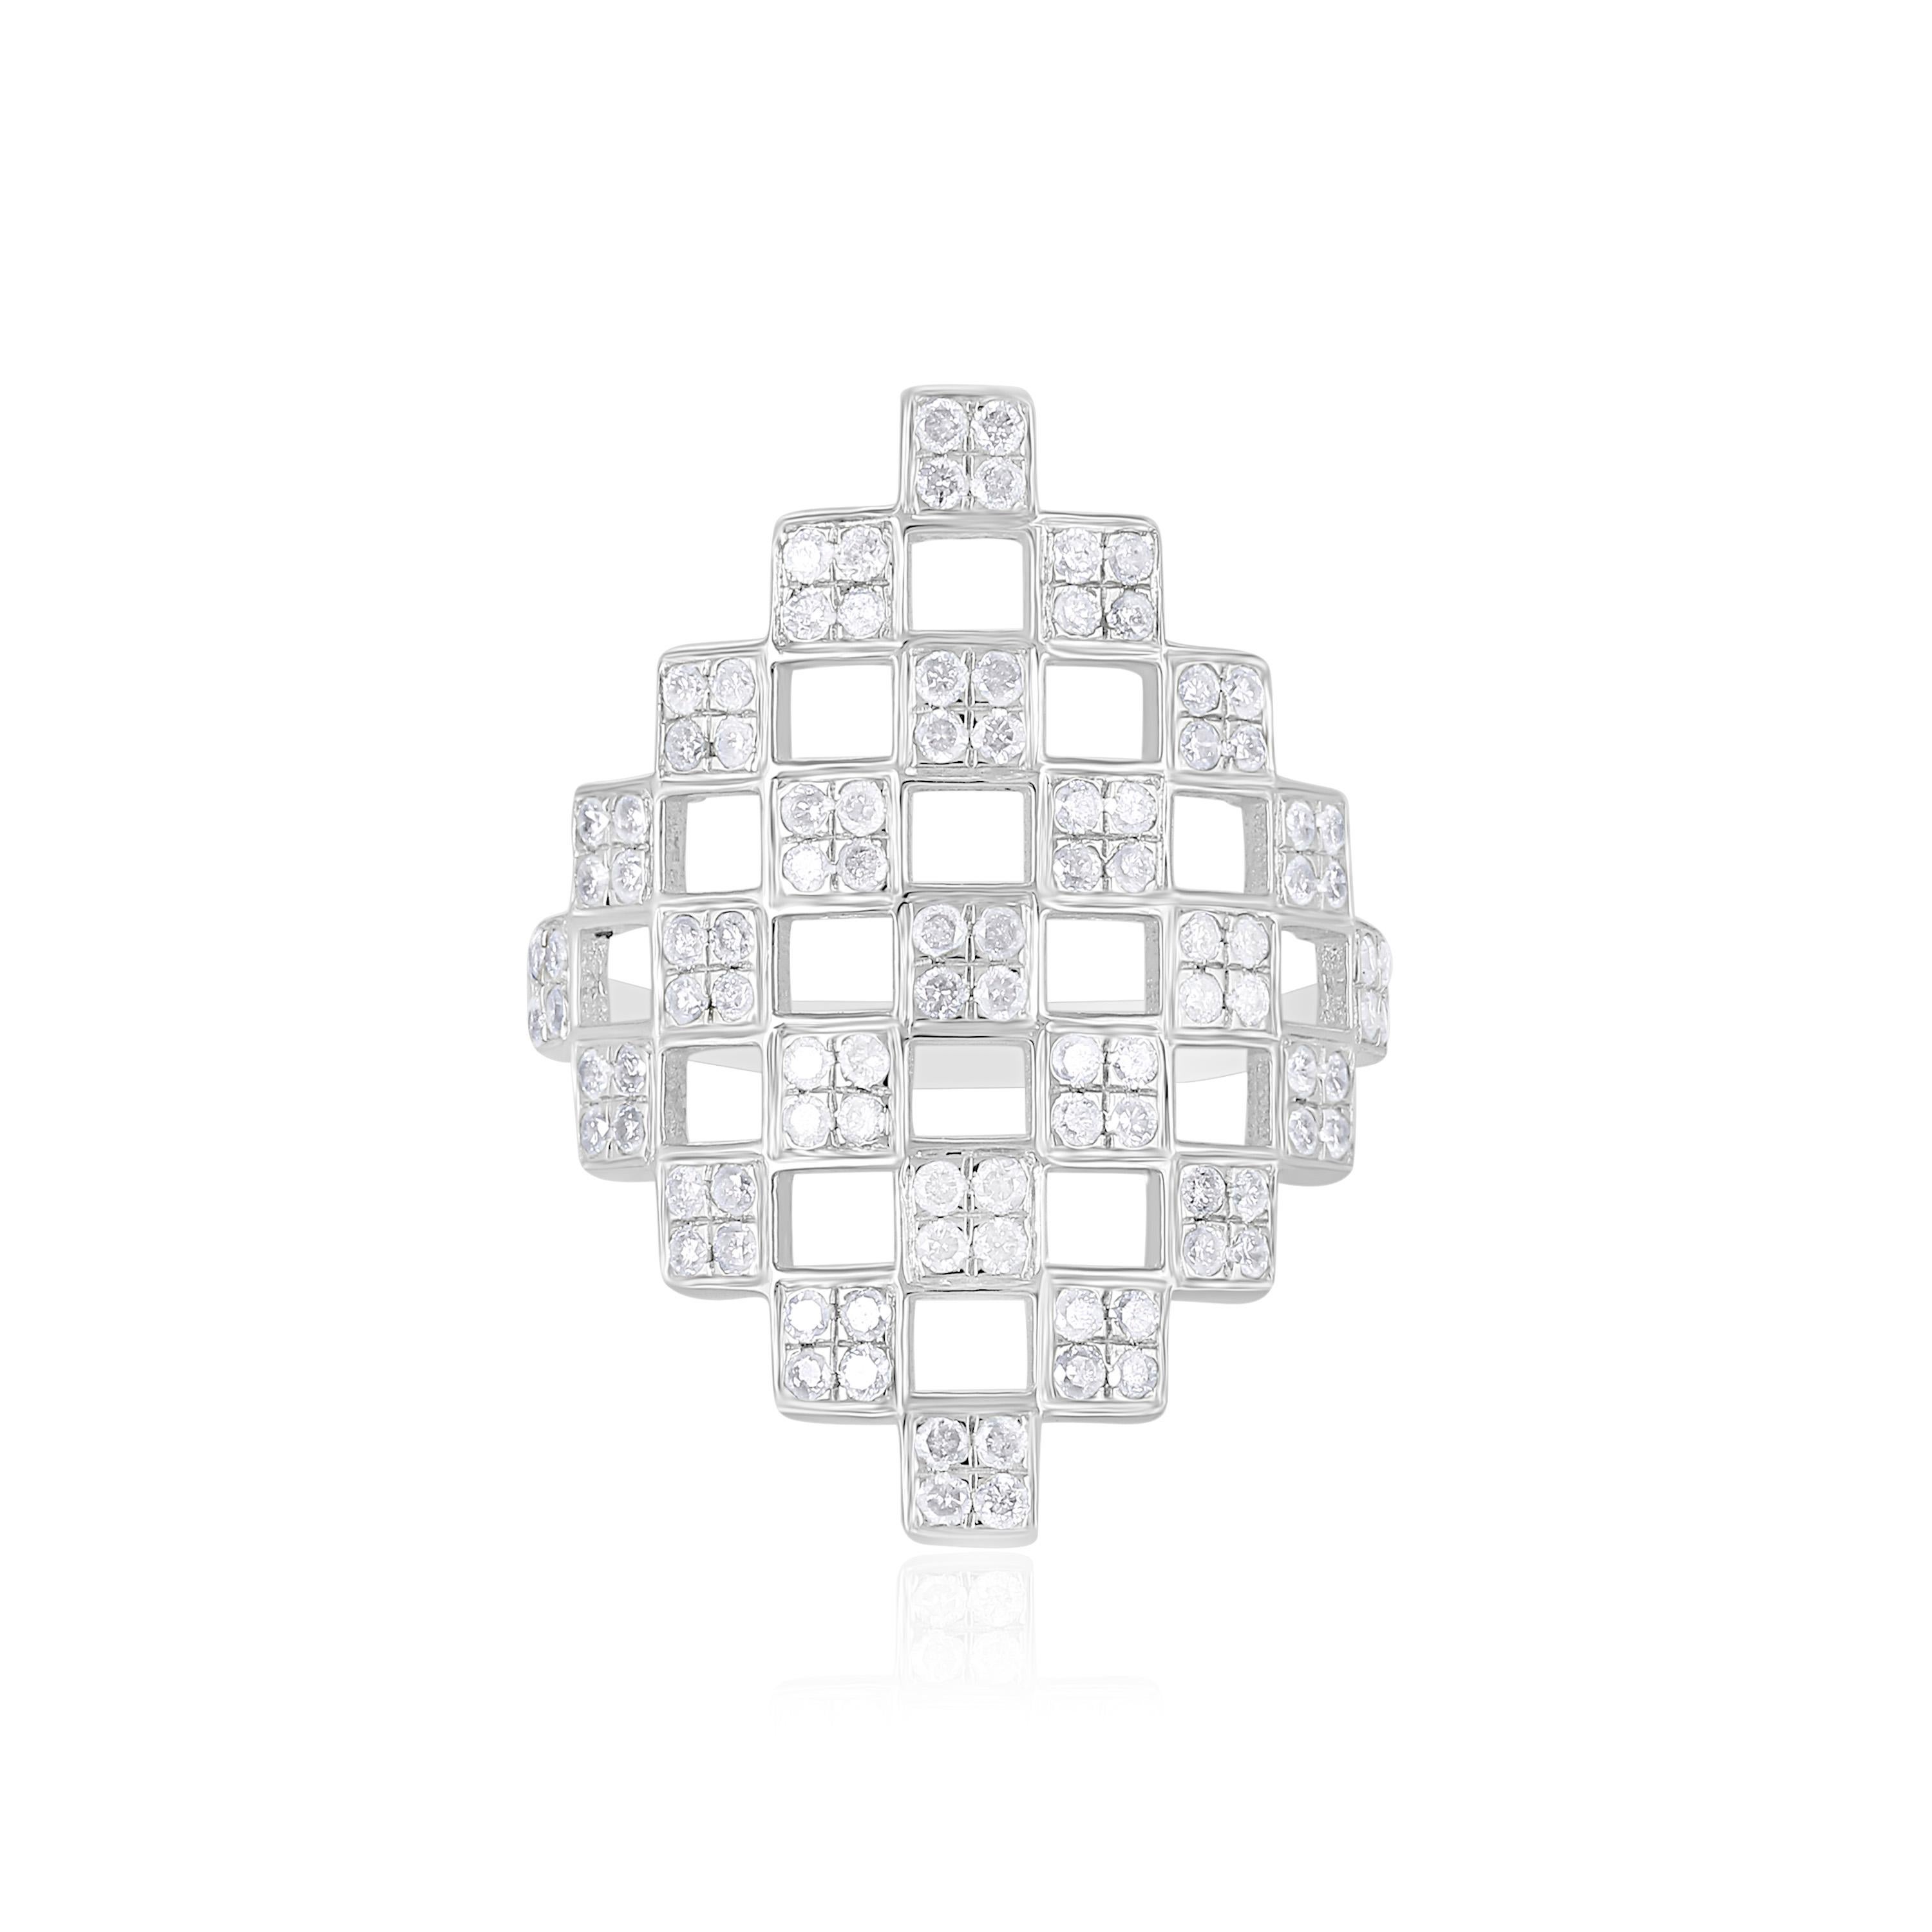 Ein kreativer Mix aus freien Formen und Gitterdesigns von Gemistry, mit abwechselnd offenen und diamantbesetzten Quadraten, die ein kunstvolles und faszinierendes Muster bilden. Die runden Diamanten und Pave-Diamanten mit einem Gewicht von 0,88